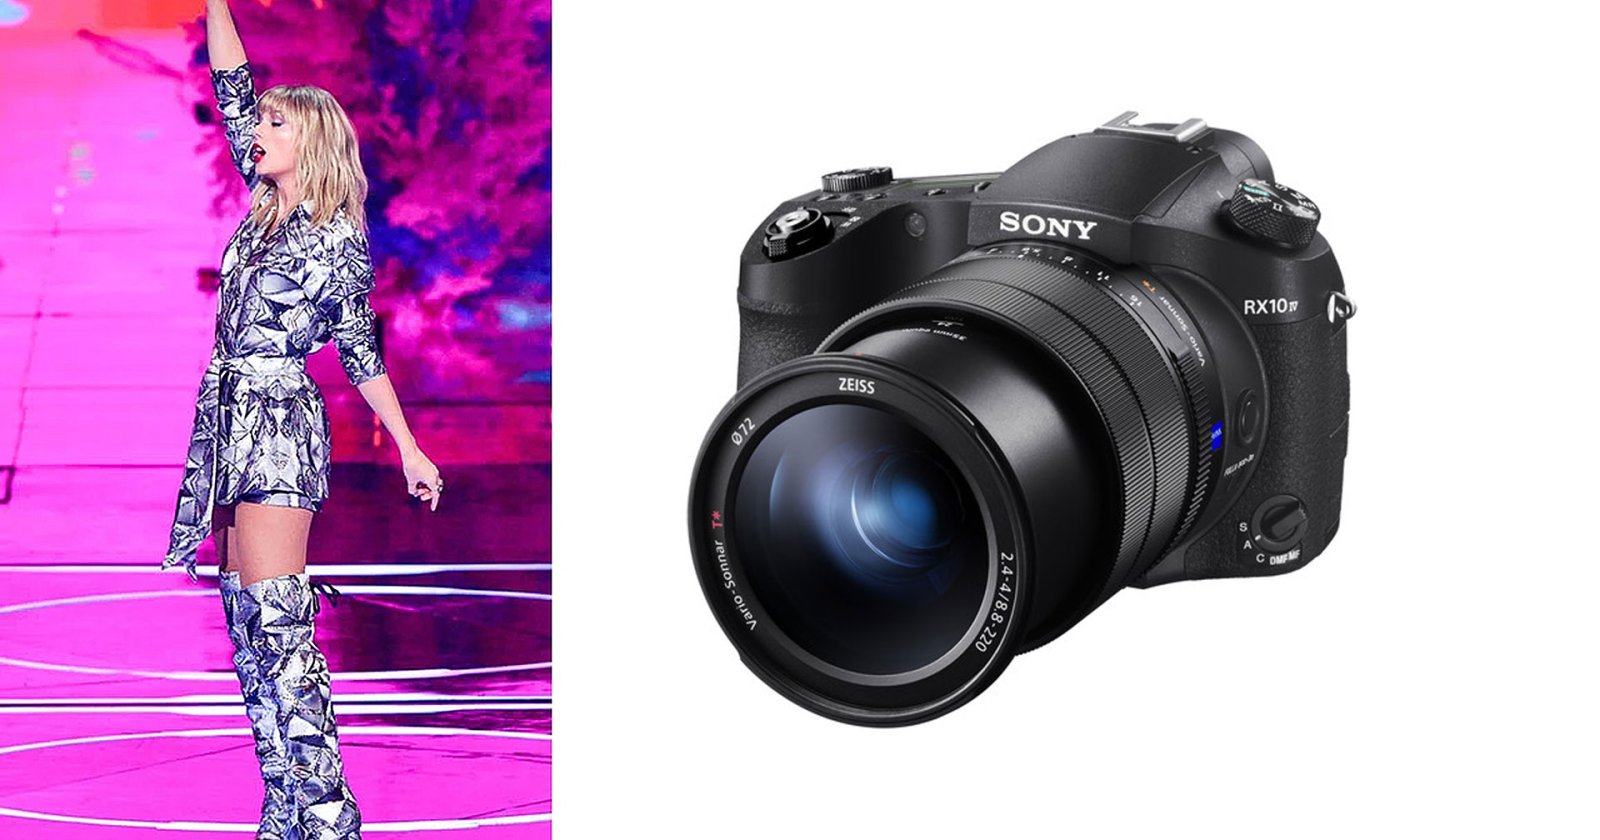 เอากล้อง Compact ซูมถ่ายคอน! แฟนคลับ Taylor Swift ซุกกล้อง Sony RX10 IV ถ่าย The Eras Tour ภาพดีกว่ากล้องมือถือซูมโหด